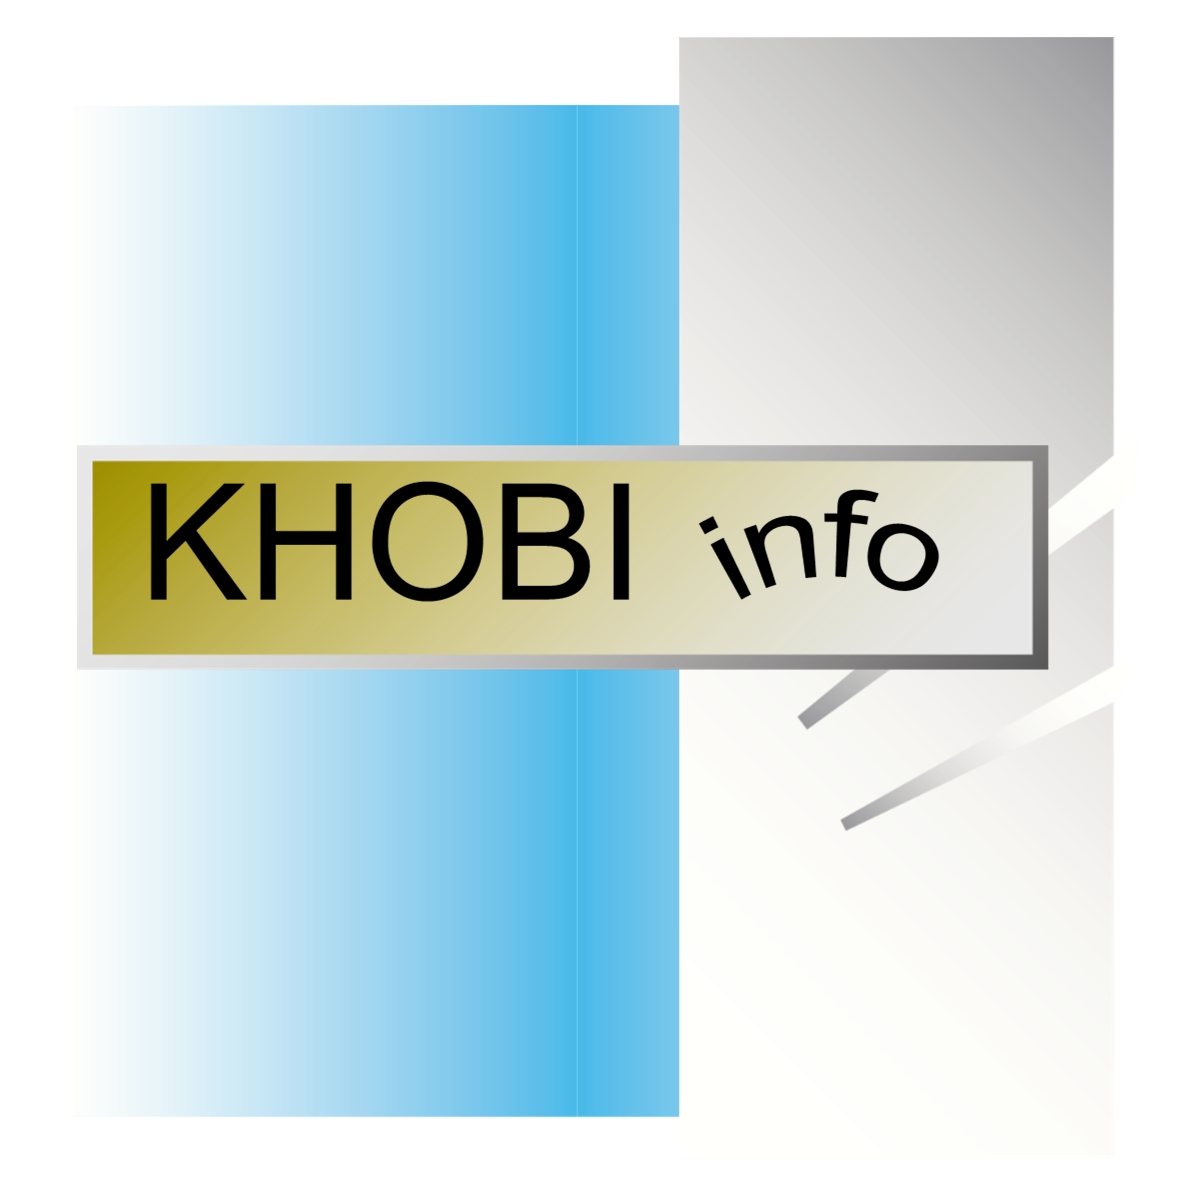 www.khobi.info